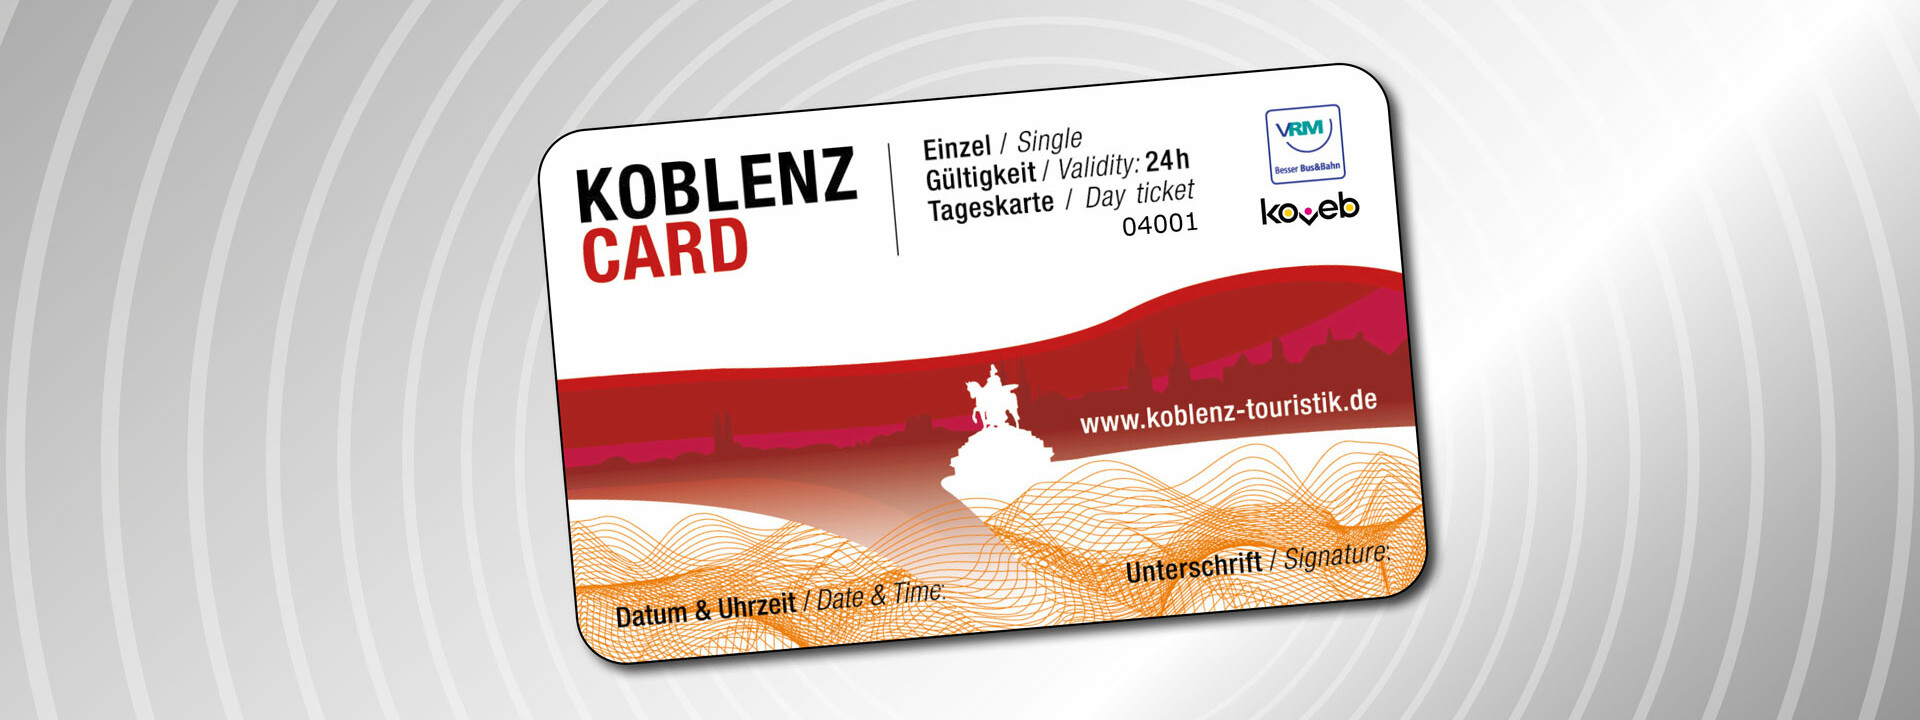 KoblenzCard mit Einzelheiten zur Gültigkeit ©Koblenz-Touristik GmbH